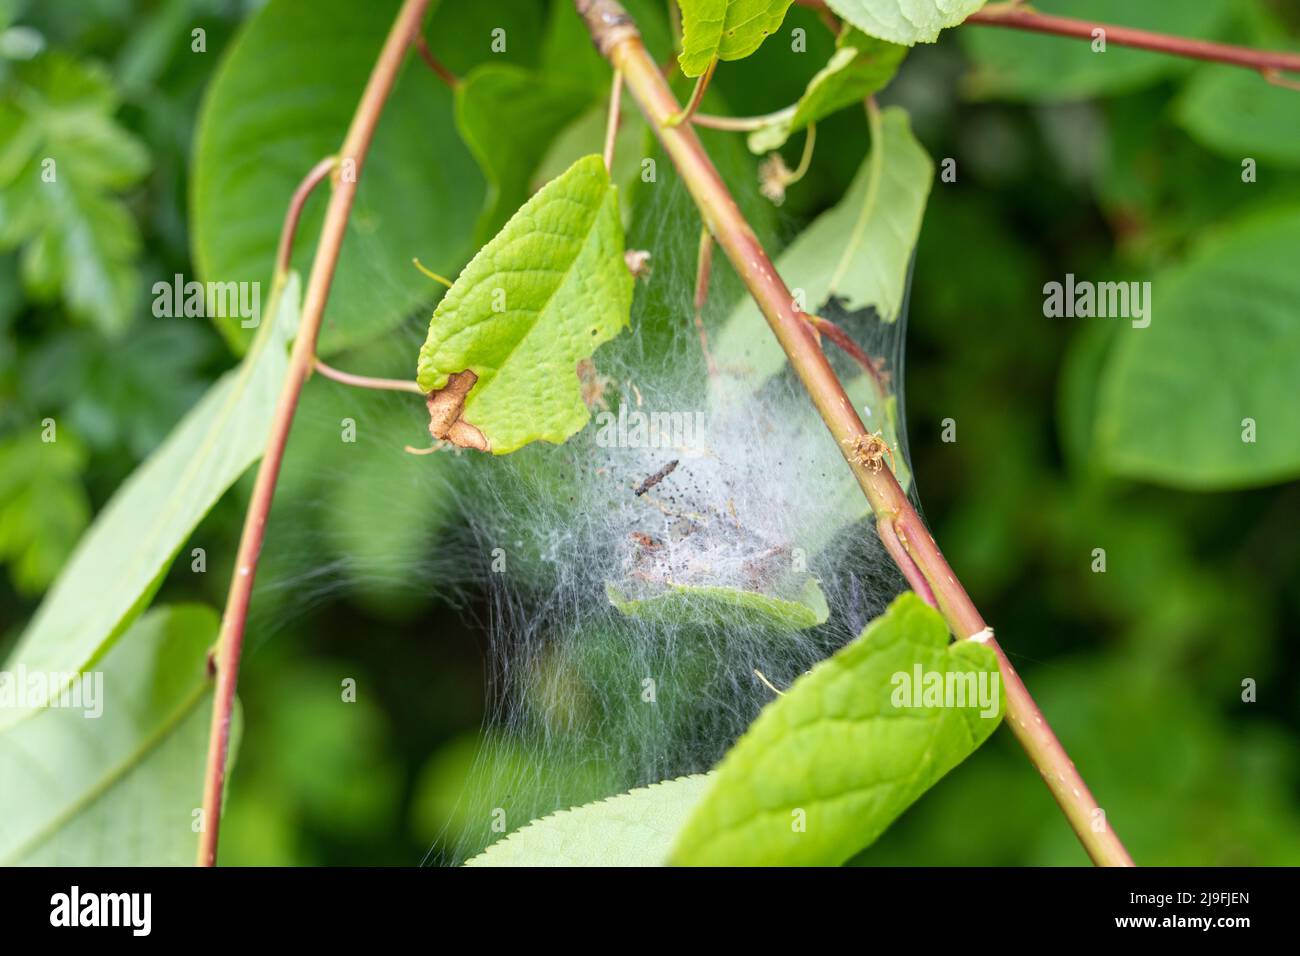 Nahaufnahme eines Raupenseidennetzes auf einem Baum, möglicherweise von der Bird-Cherry-Ermine-Motte - Yponomeuta evonymella mit Larven im Inneren. Stockfoto